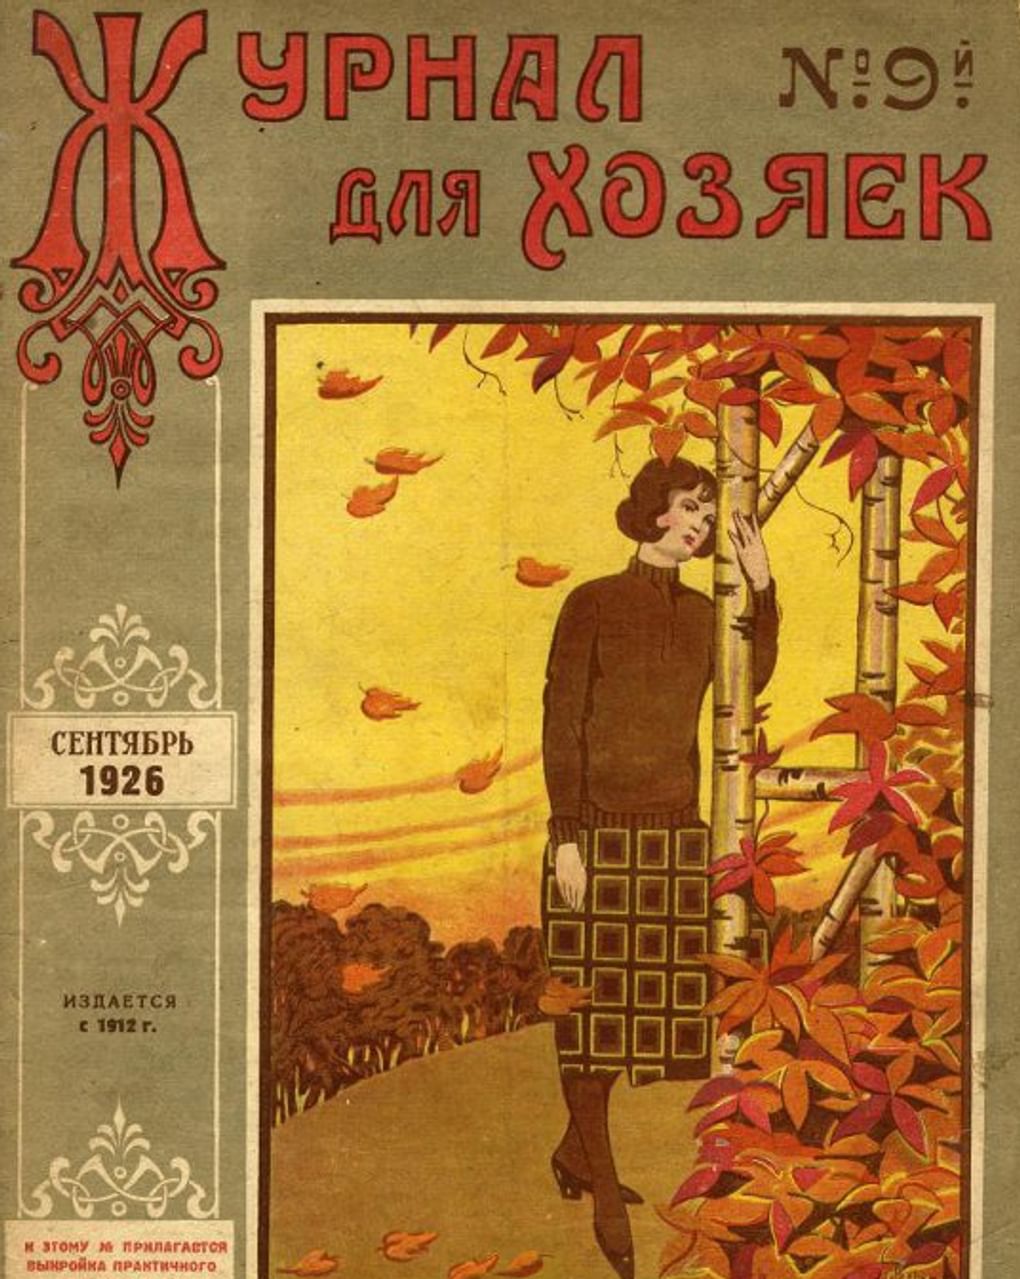 «Журнал для хозяек» №9. 1926. Государственный исторический музей, Москва